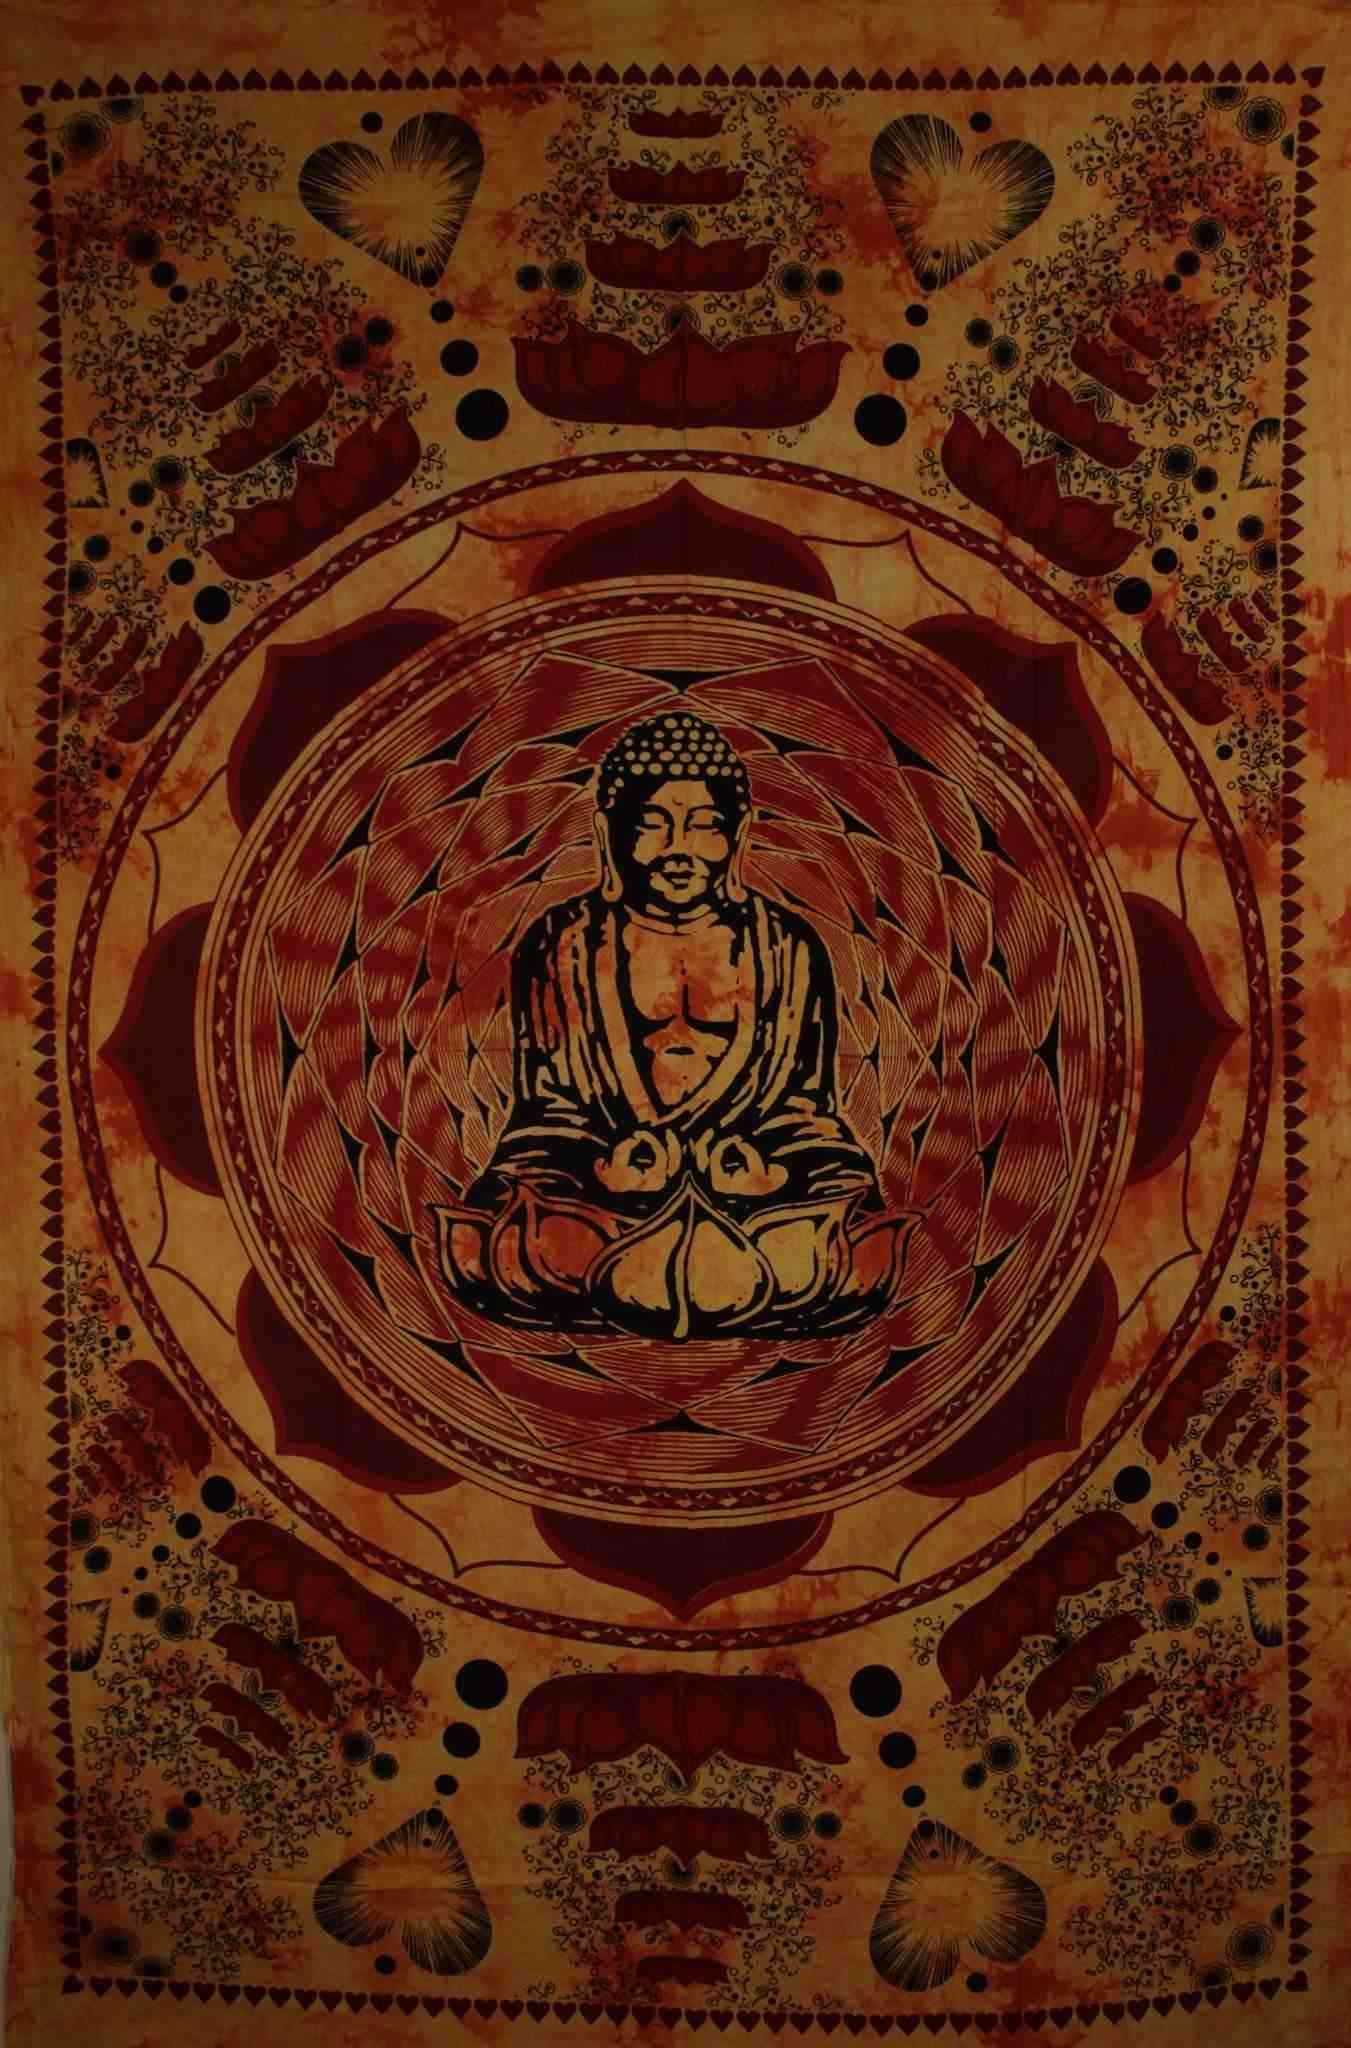 Buda u dharmi čakri mudri na tapiseriji cvijeta lotosa